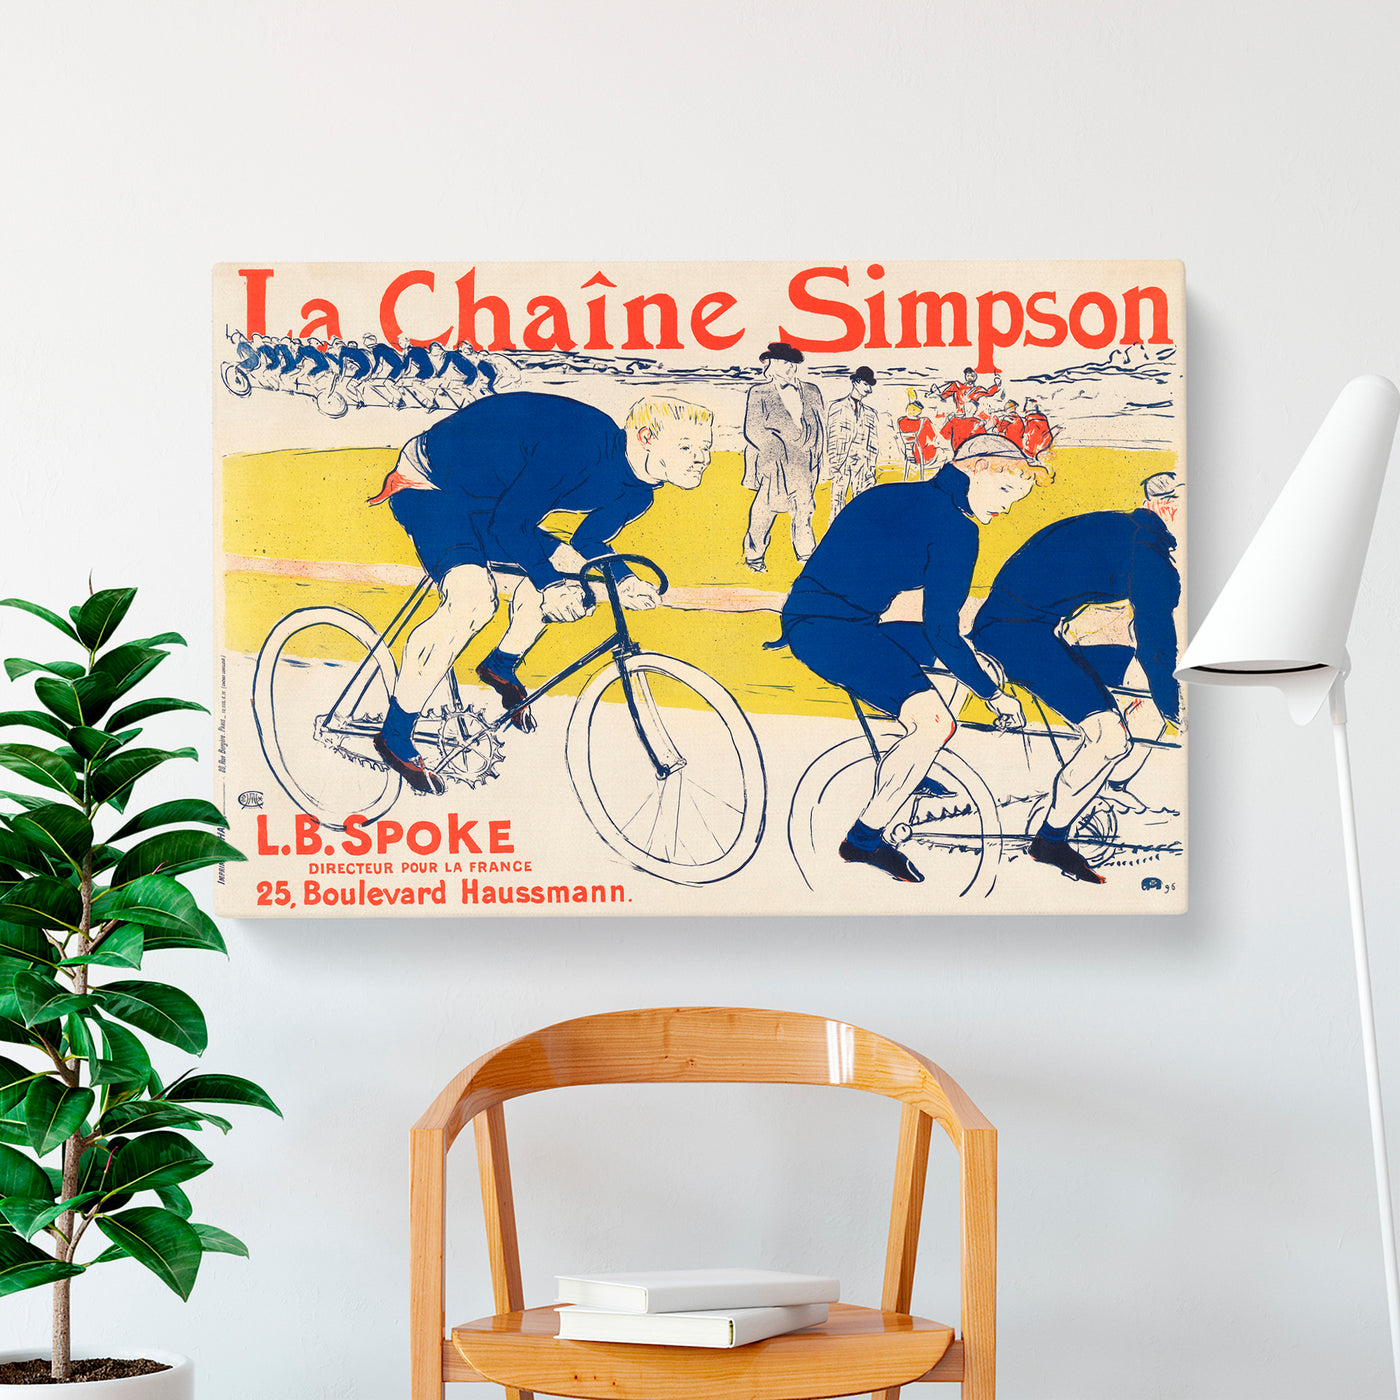 The Simpson Chain by Henri De Toulouse Lautrec